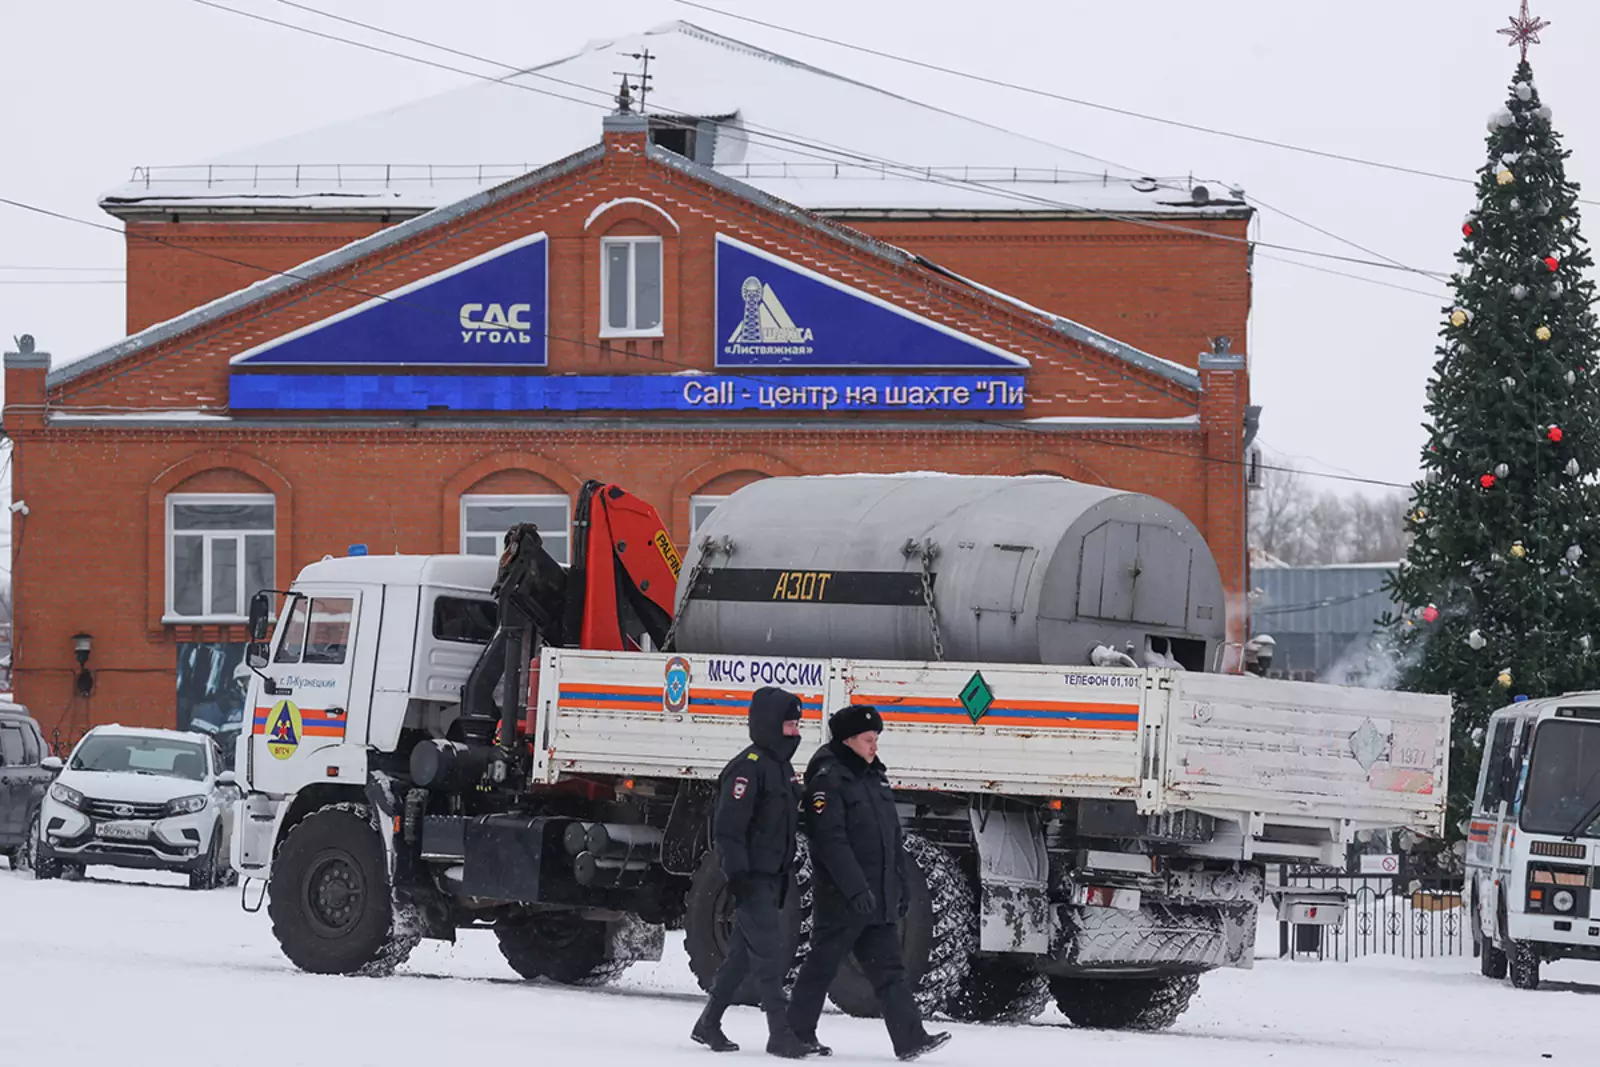 Шахта "Листвяжная" в Кемеровской области, где в результате аварии погибли люди